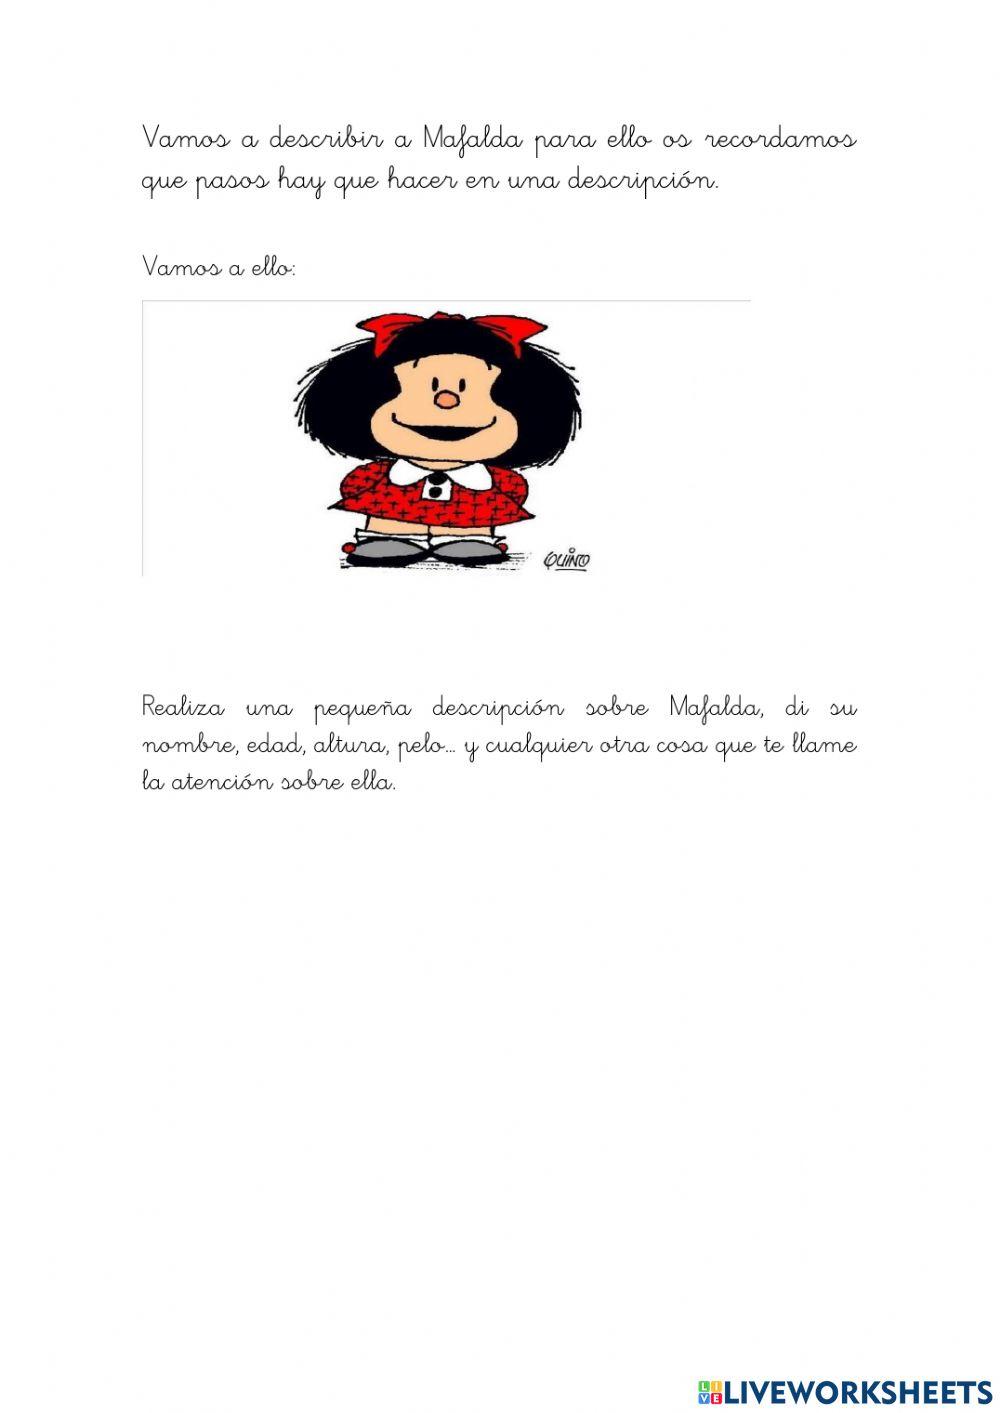 Mafalda online exercise